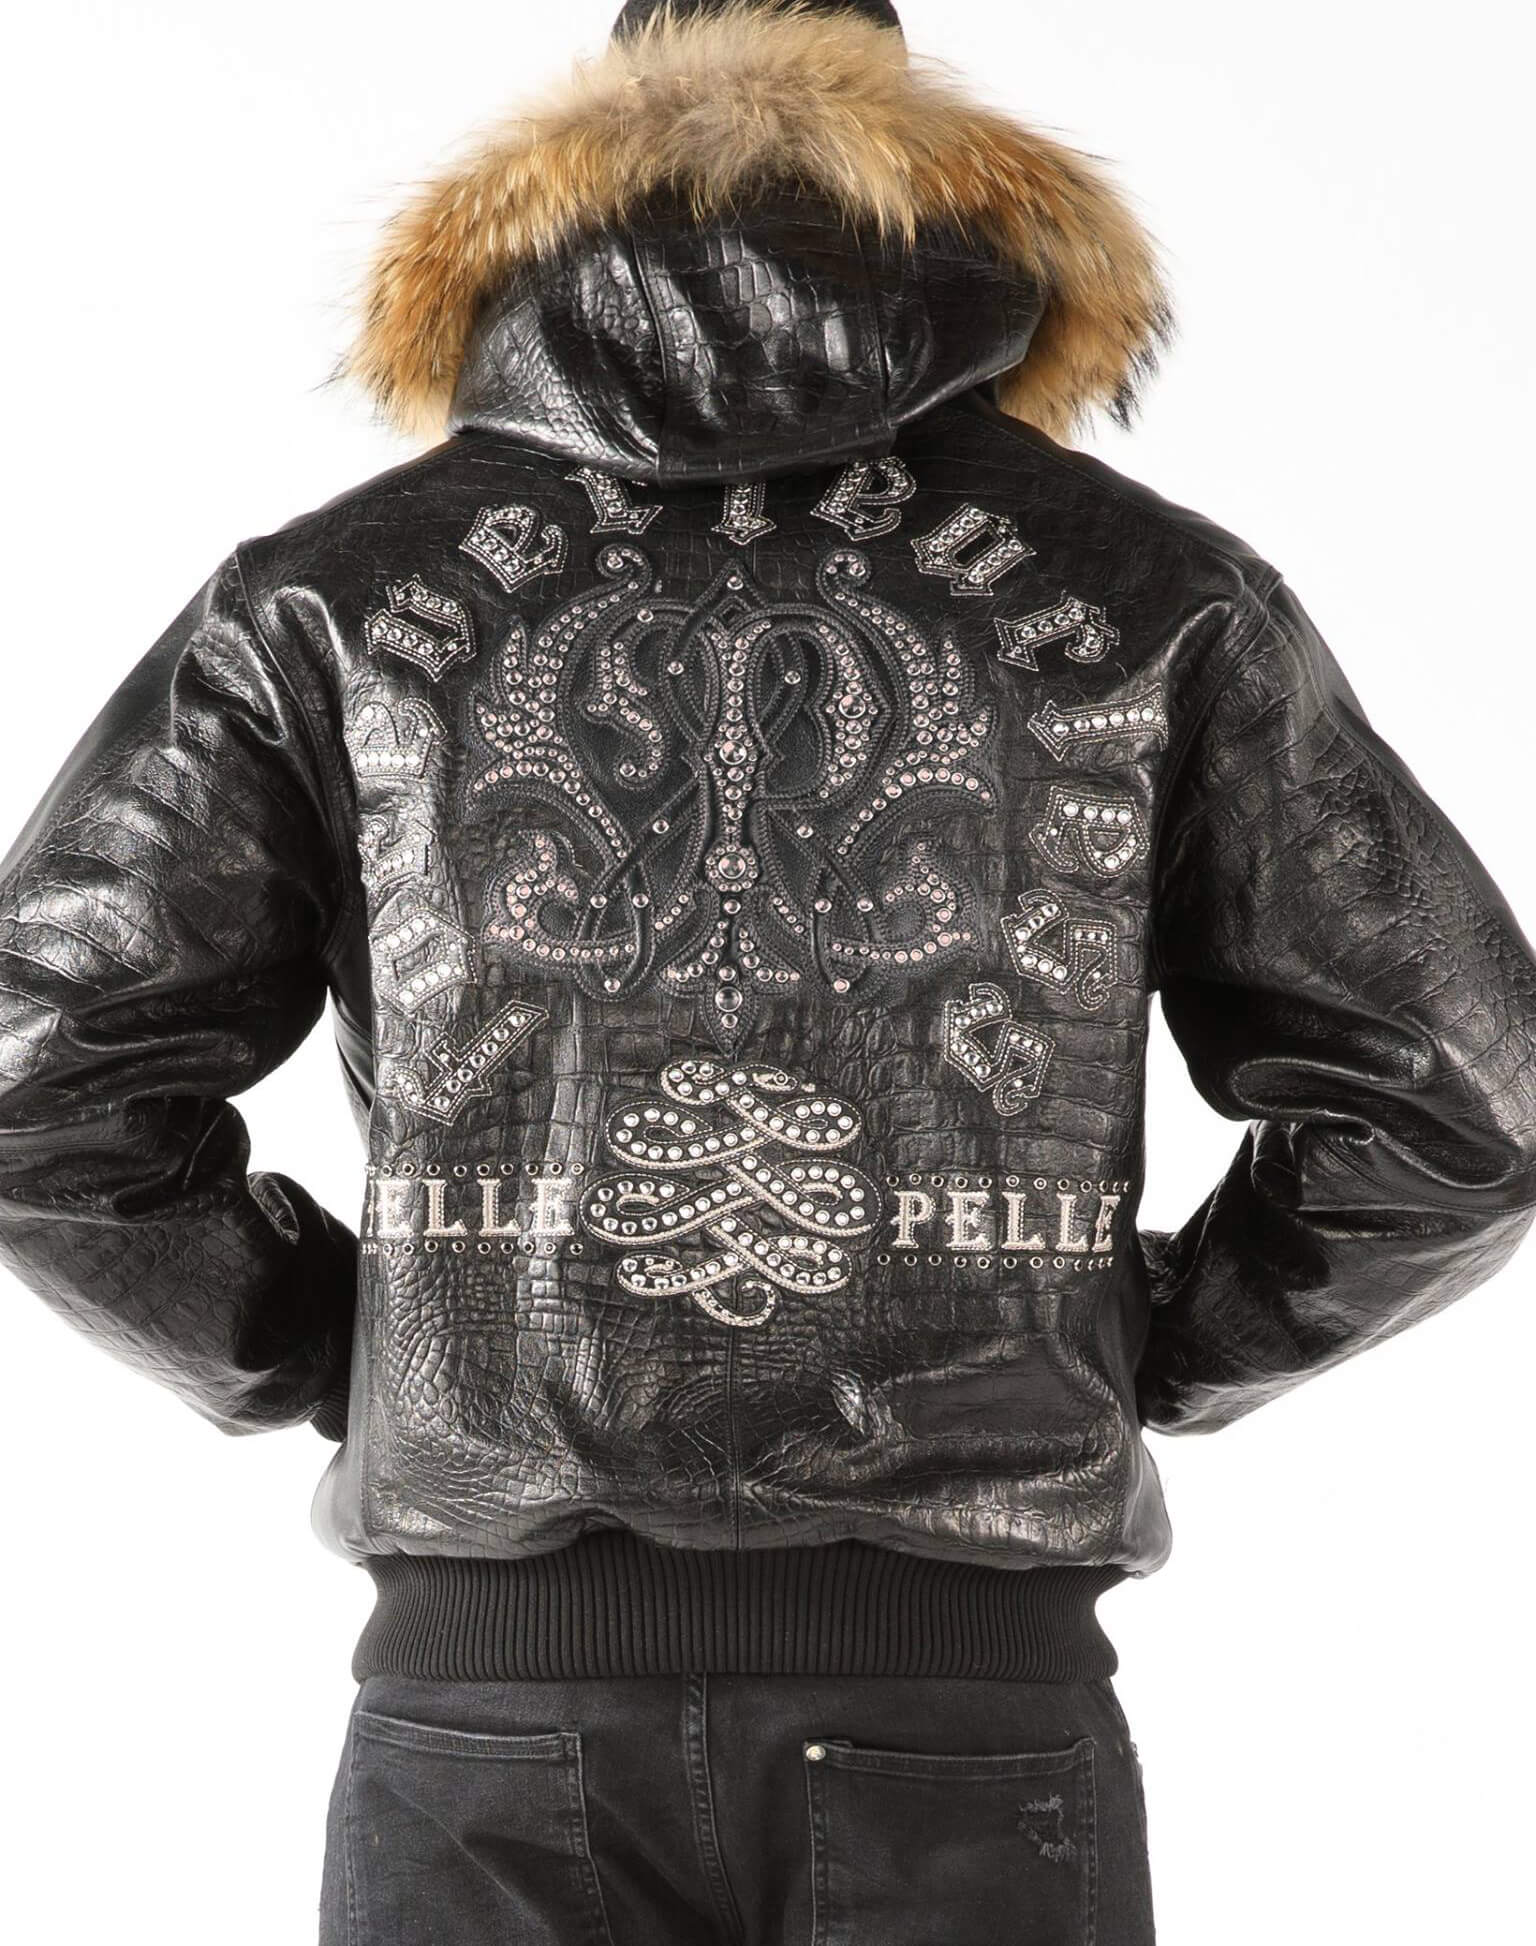 Pelle Pelle, Jackets & Coats